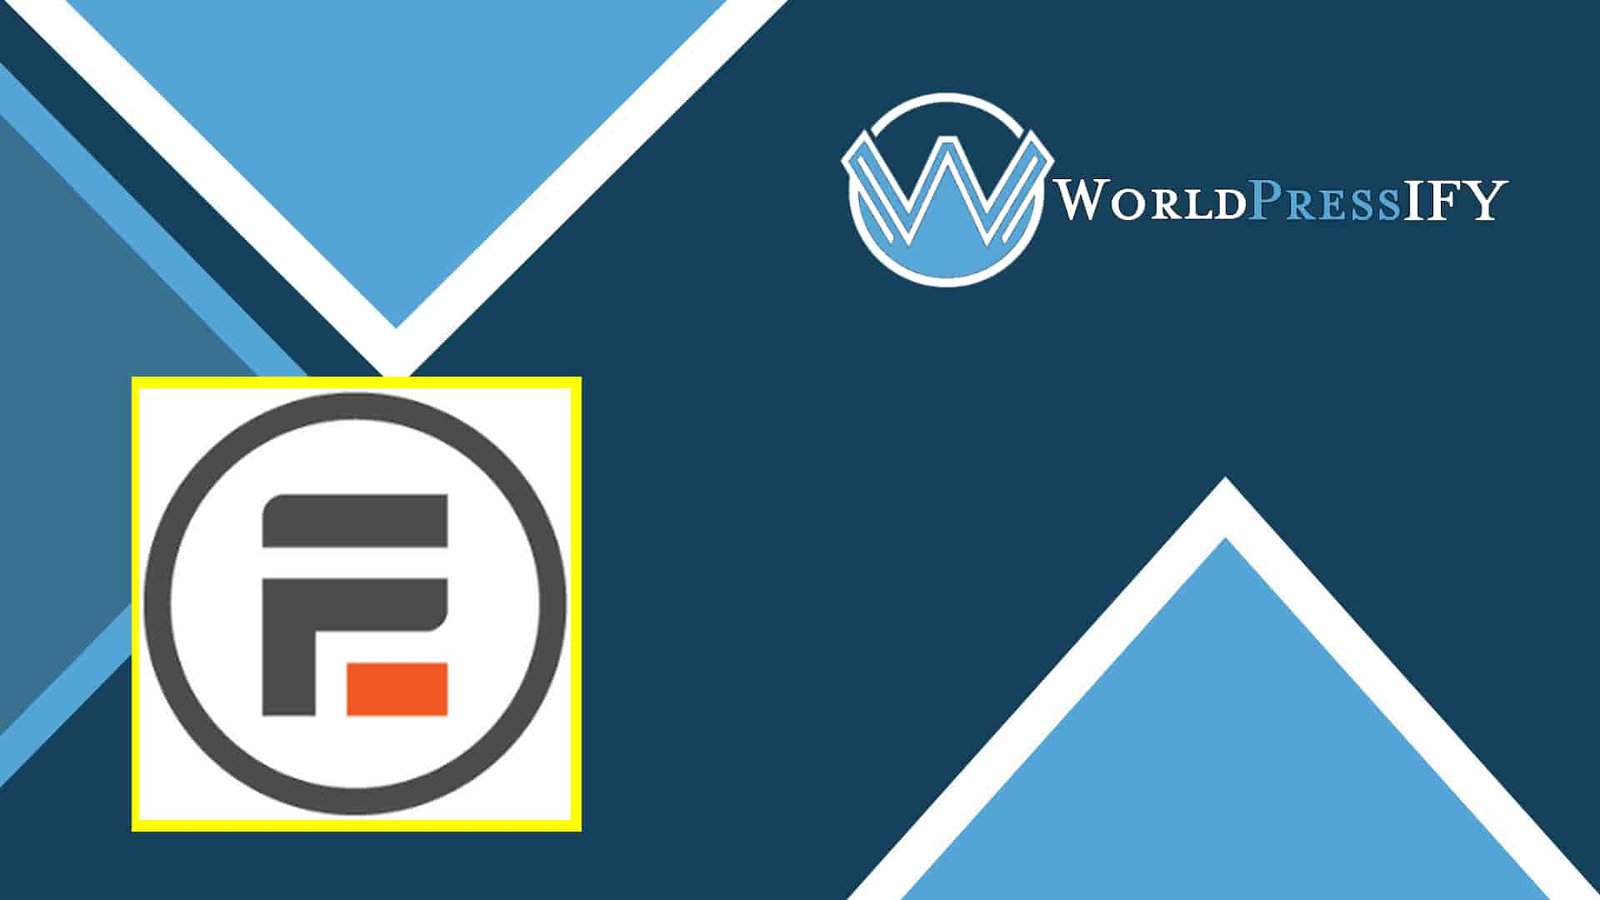 Formidable Forms – API Webhooks - WorldPress IFY